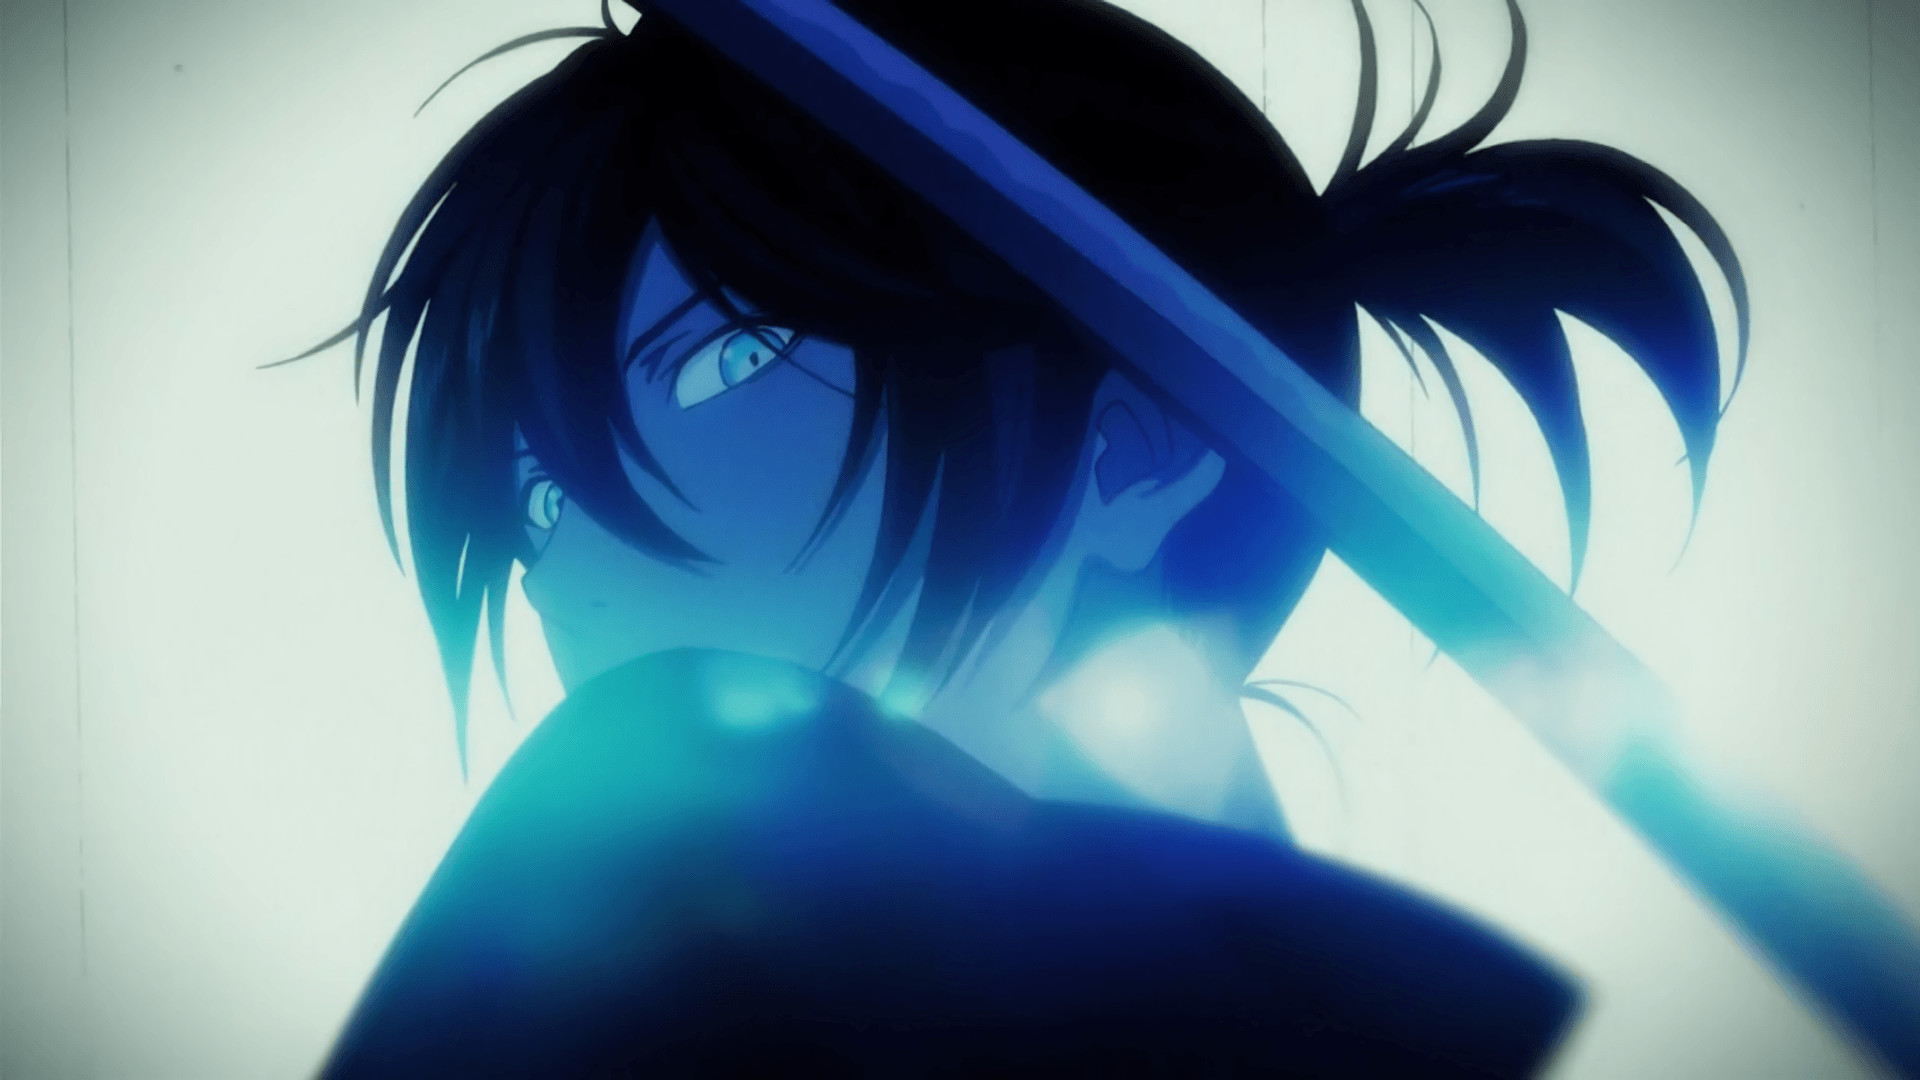 noragami wallpaper,blue,hair,cg artwork,anime,black hair